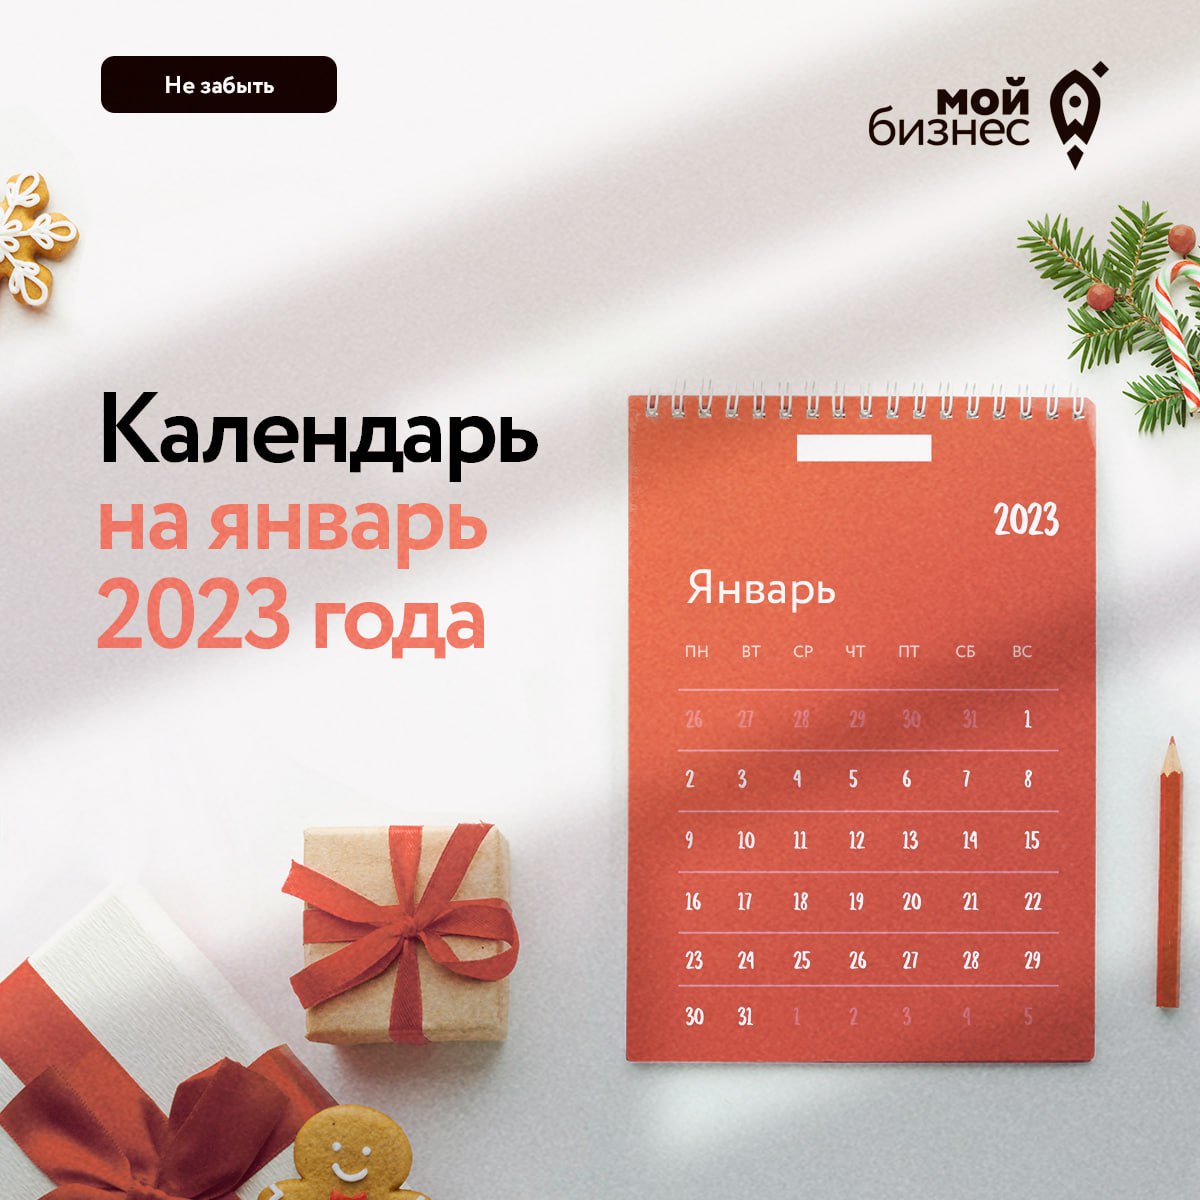 Календарь предпринимателя на январь 2023 года